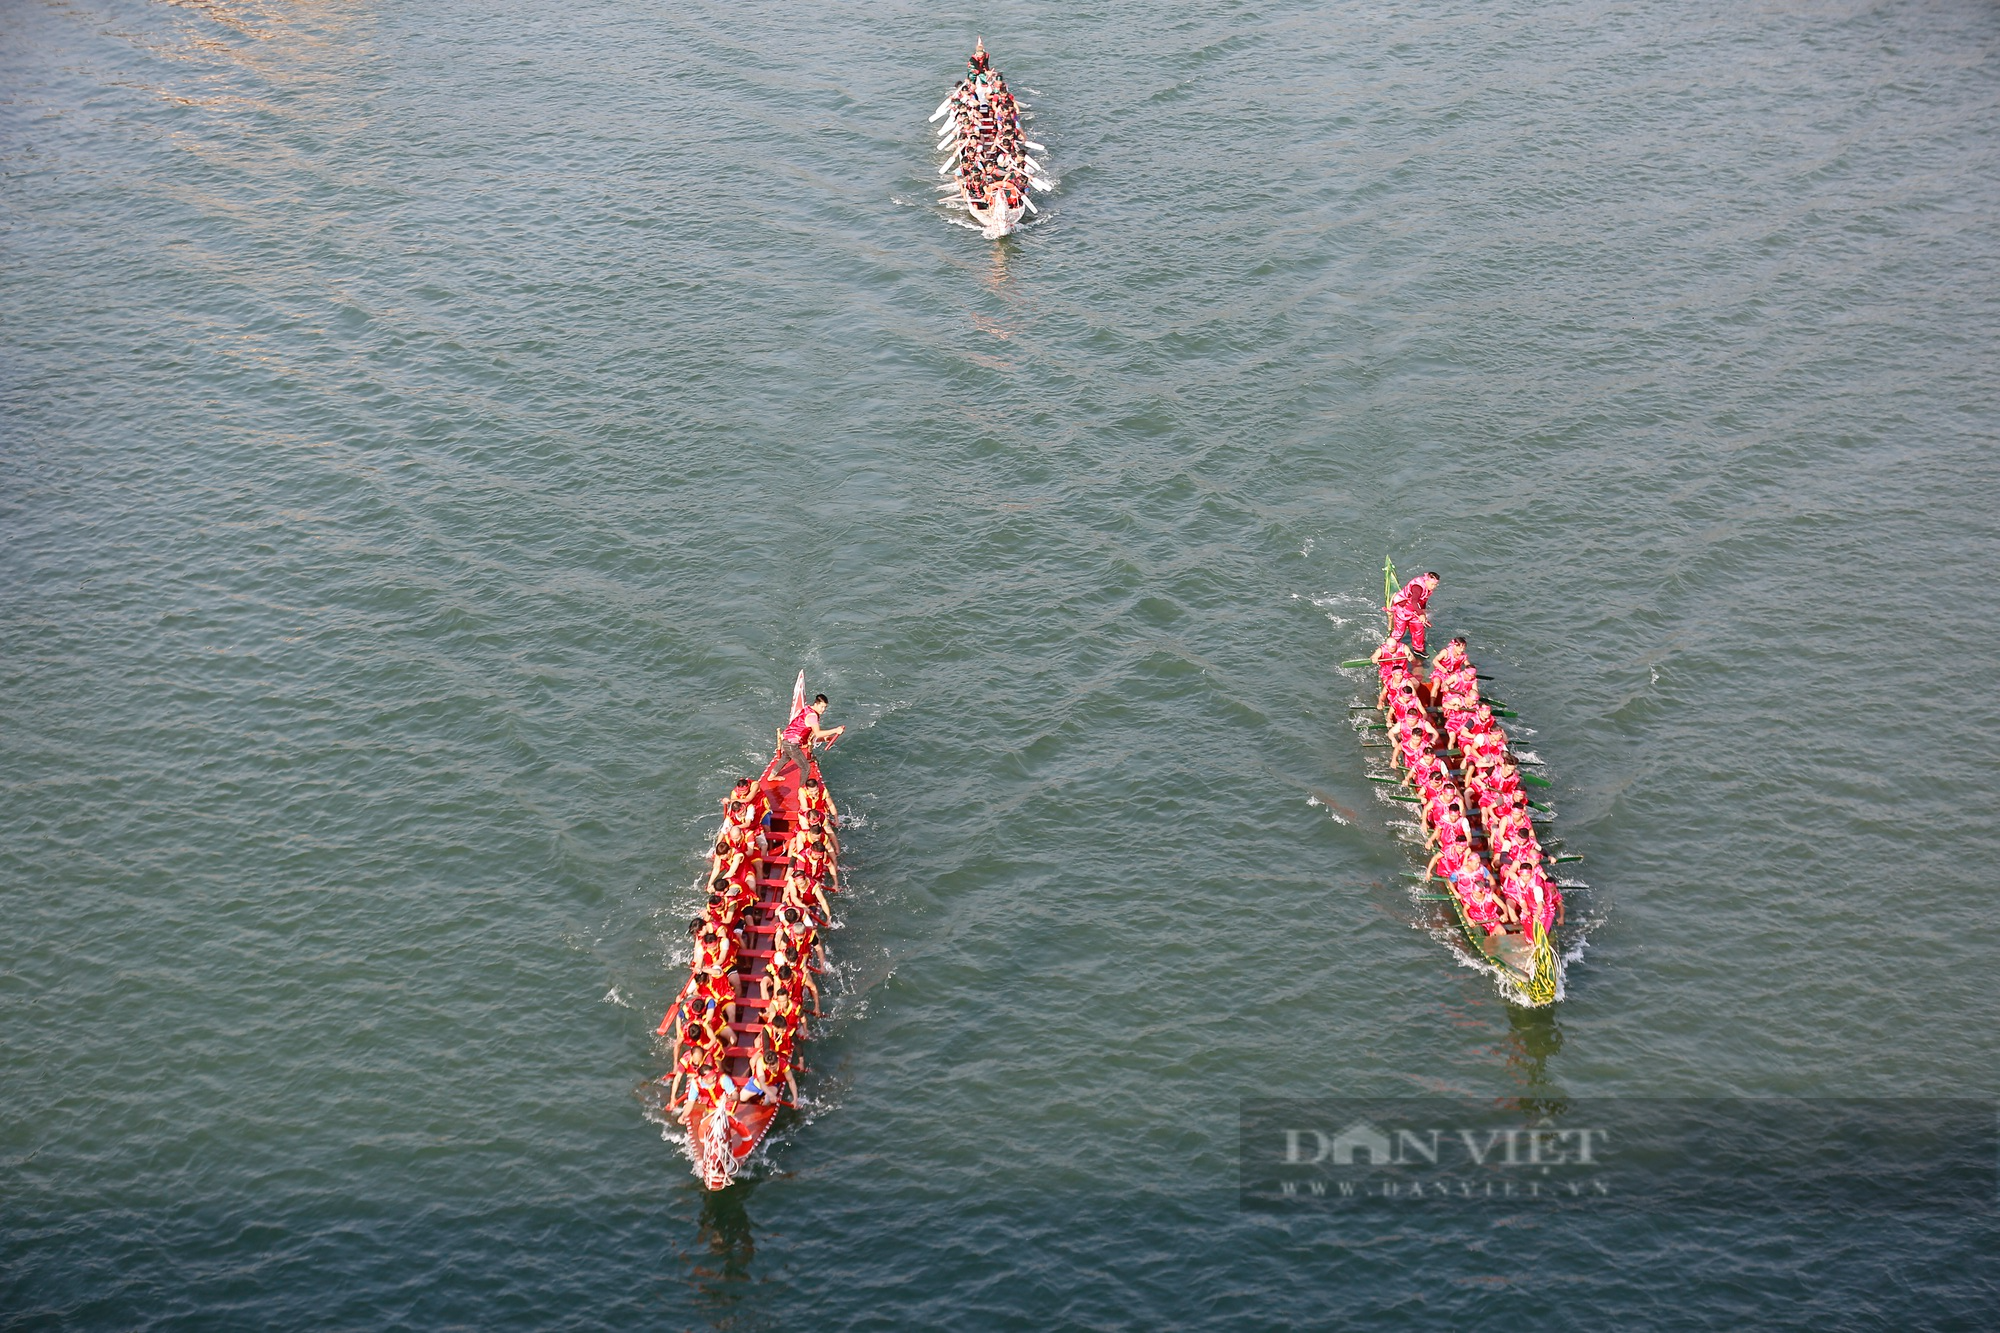 Hàng nghìn người đứng kín hai bên bờ xem Hội đua thuyền trên sông Lô - Ảnh 5.